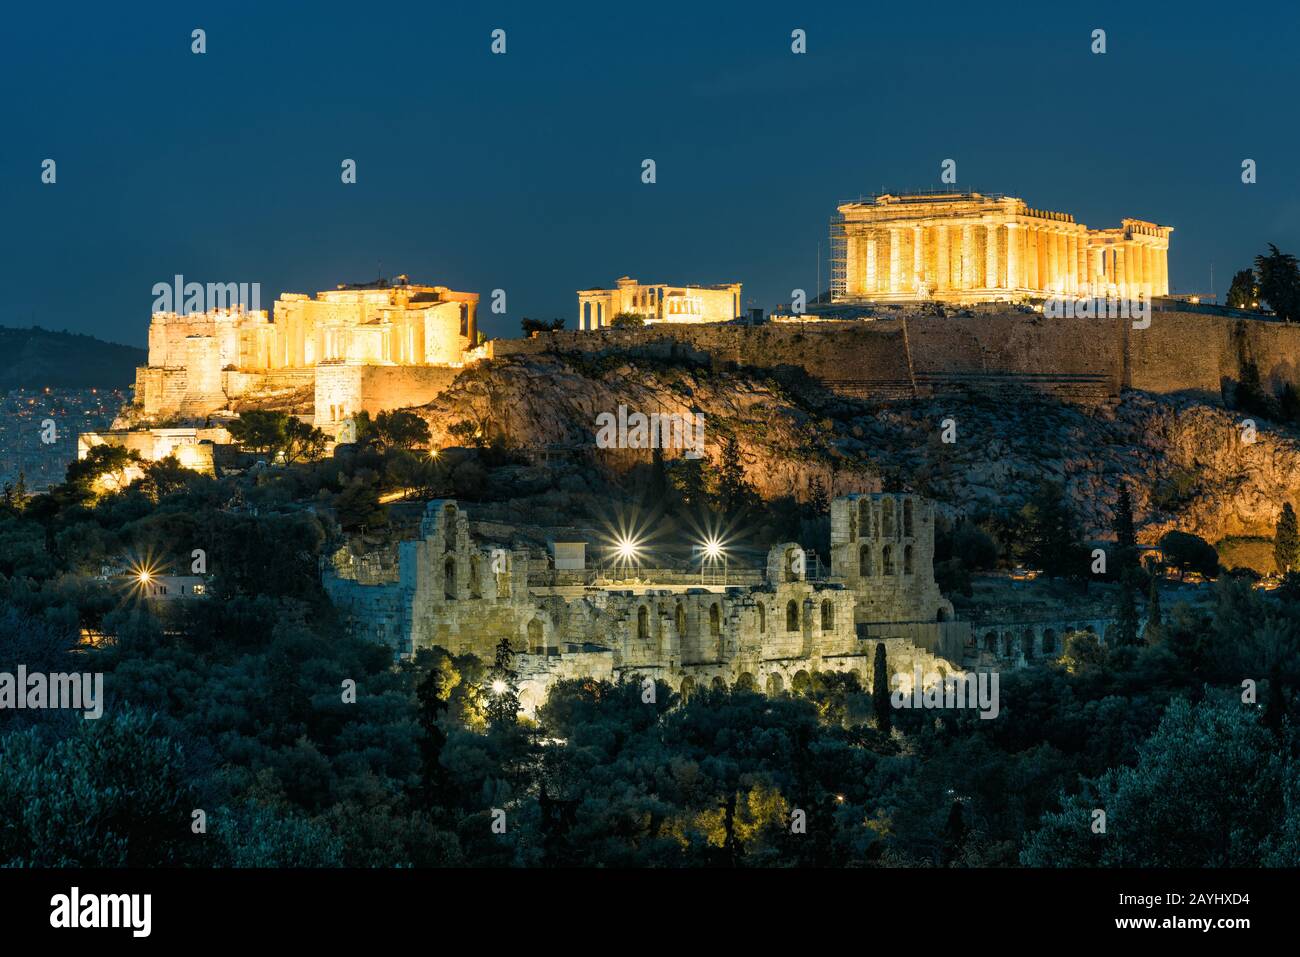 Blick auf die Akropolis von Athen, Griechenland. Die berühmten antiken griechischen Strukturen auf dem Akropolishügel sind das wichtigste Wahrzeichen Athens. Leuchtruinen o Stockfoto